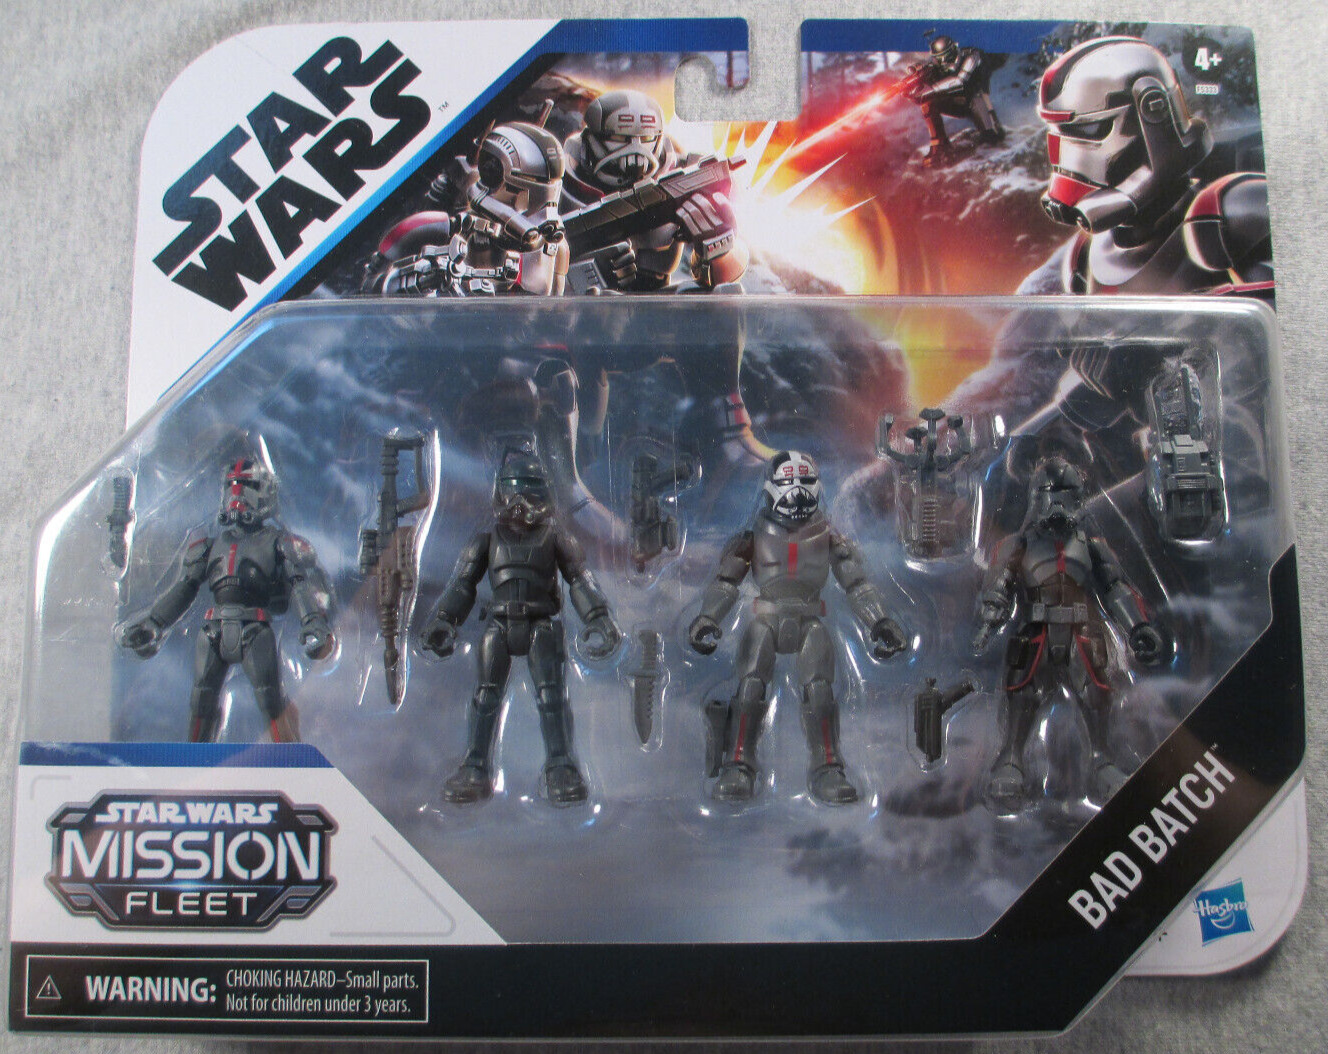 Bad Batch (4-pack) - Sealed 2.5" srs figures - Star Wars Mission Fleet